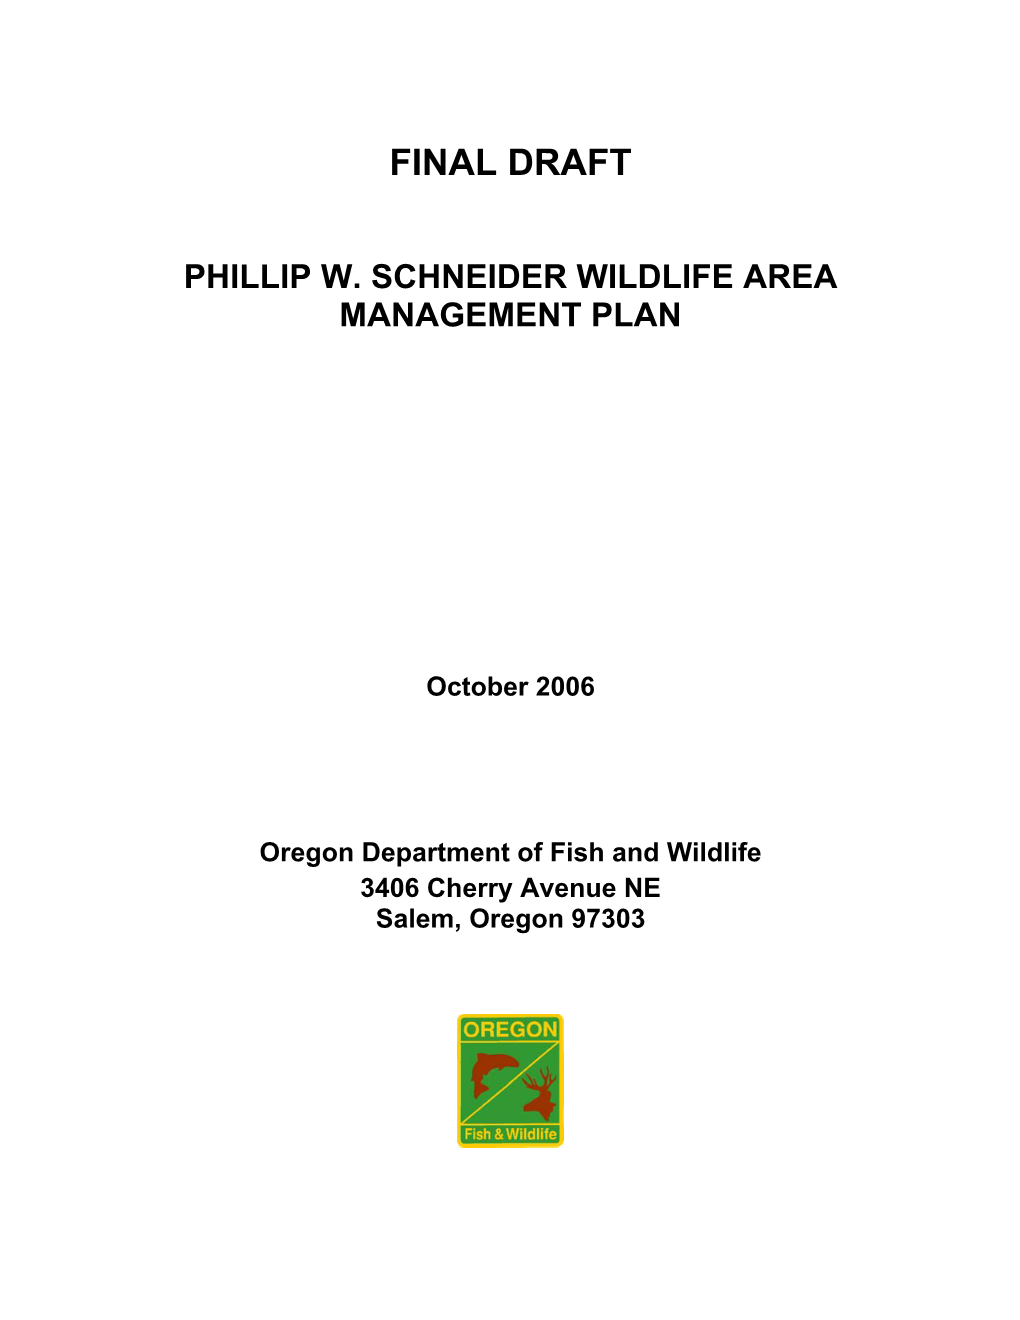 Phillip W. Schneider Wildlife Area Management Plan